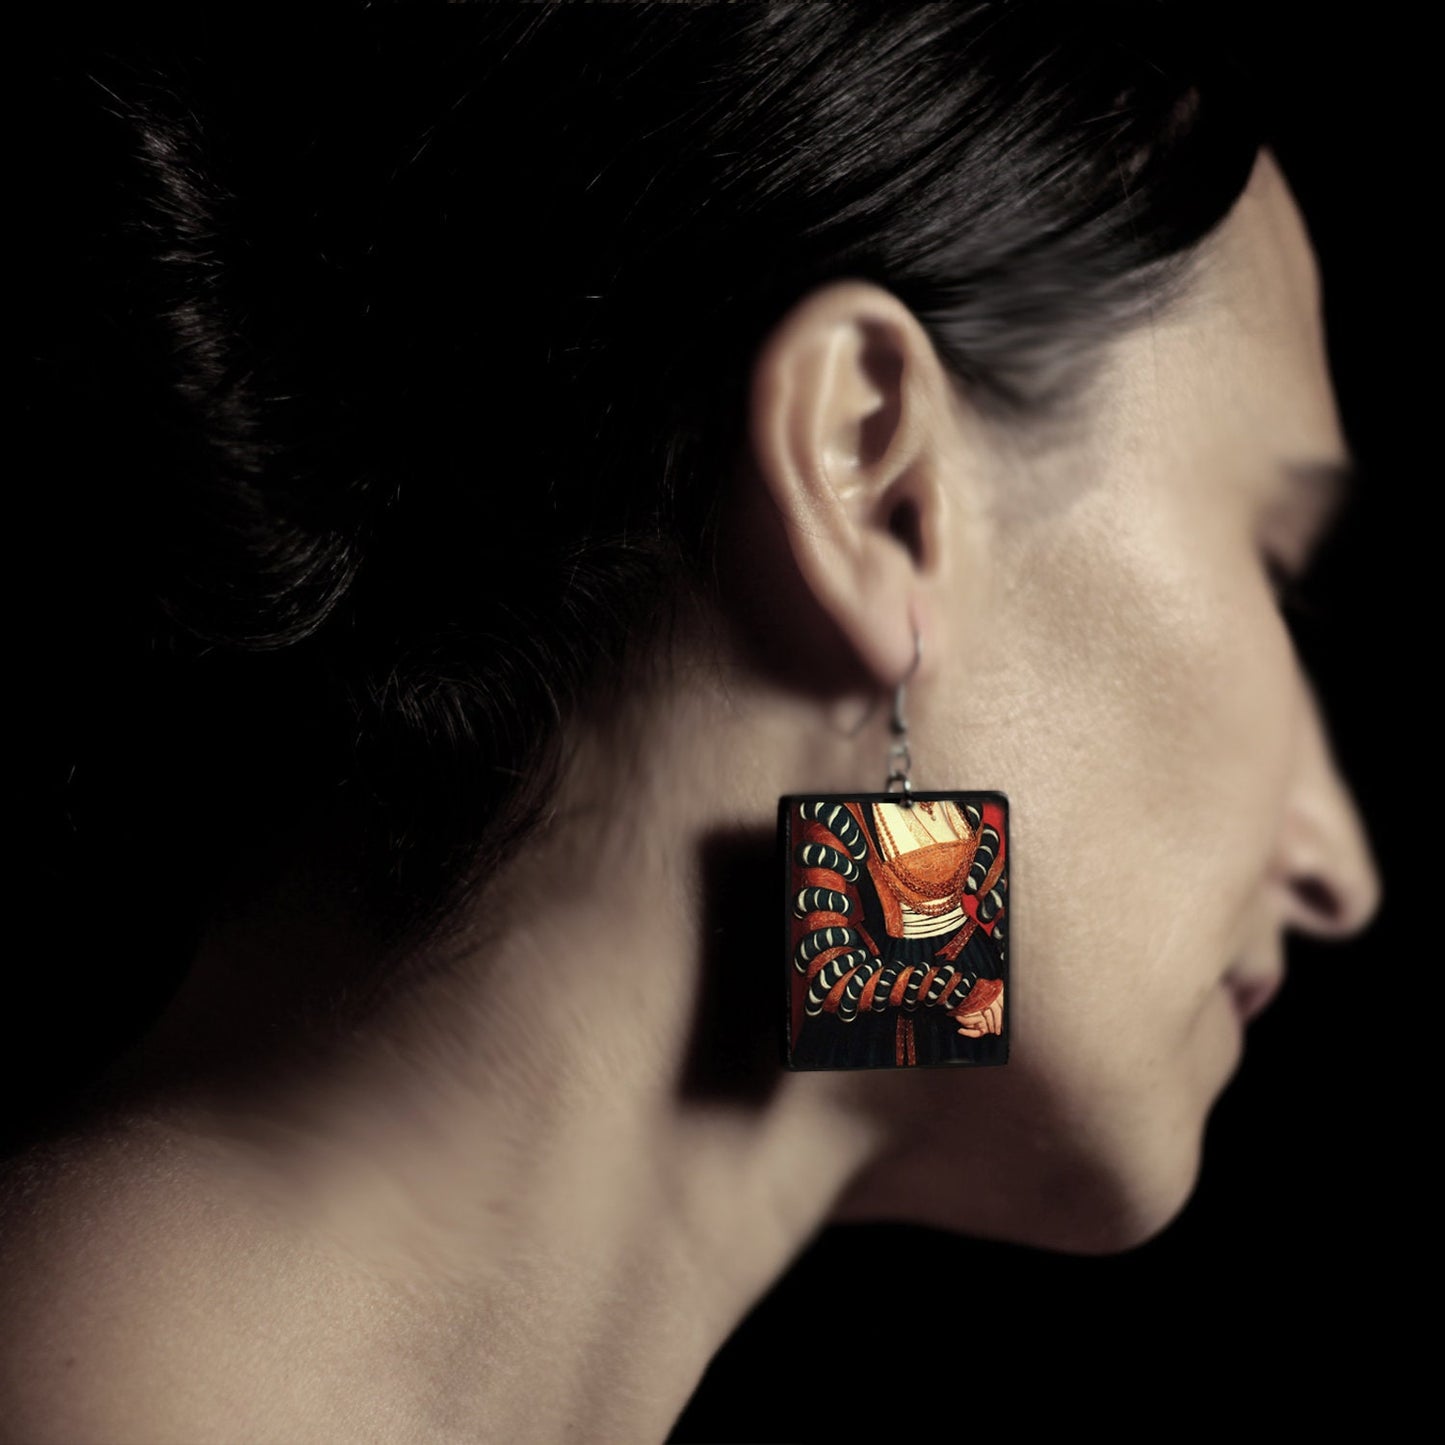 Lucas Cranach art earrings